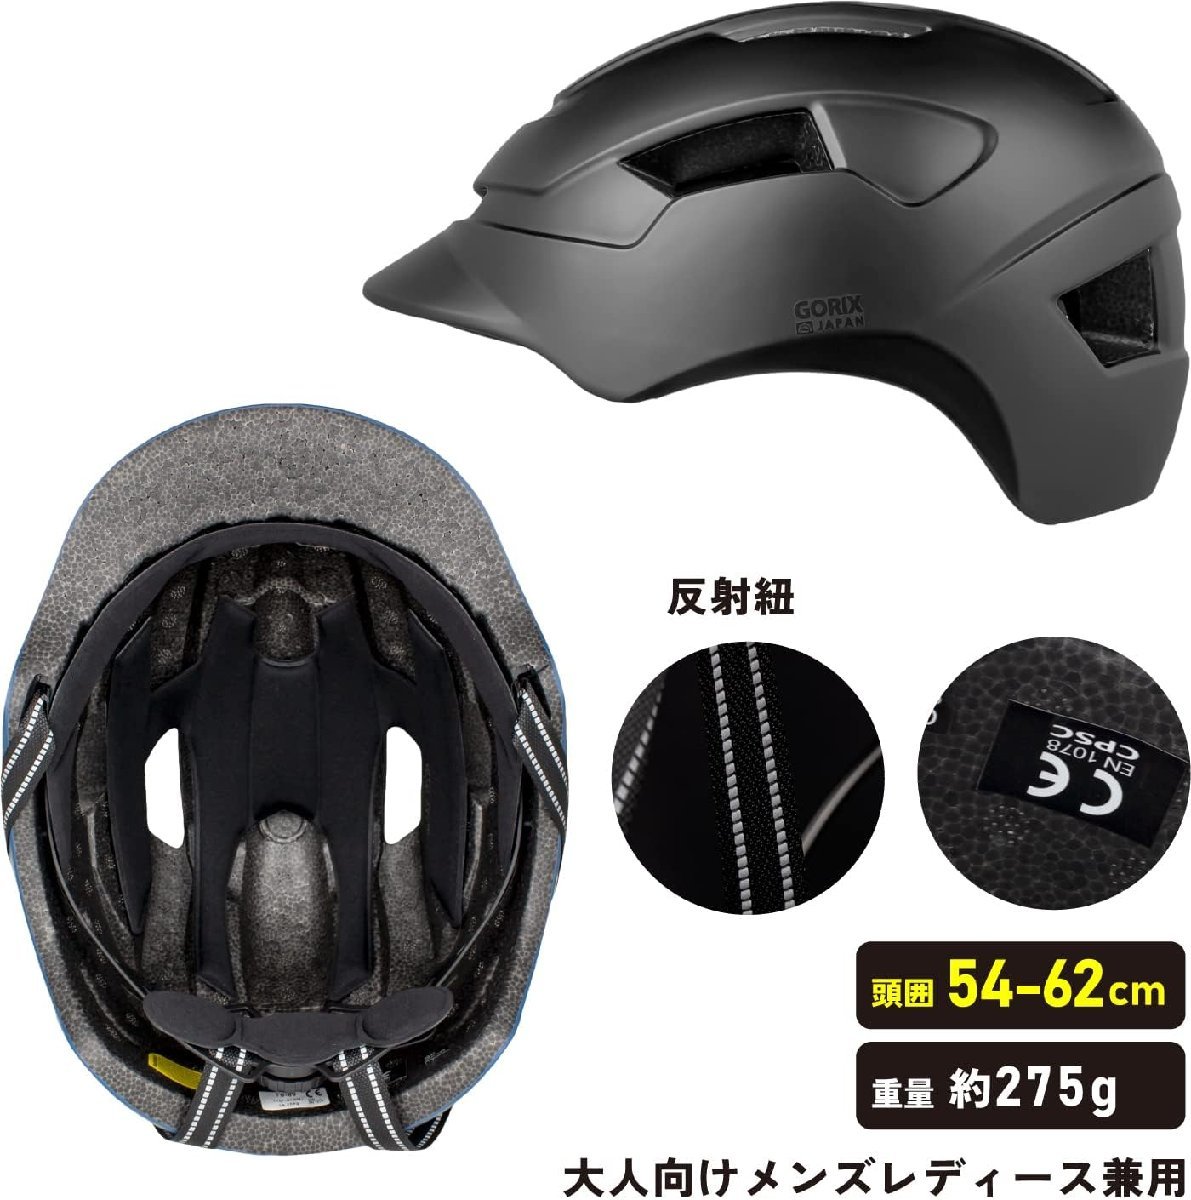 ヘルメット 自転車 帽子 大人 メンズ レディース 軽量 GORIX ゴリックス カジュアル サイクリング 自転車通勤 自転車通学 (GALEA80)黒_画像4